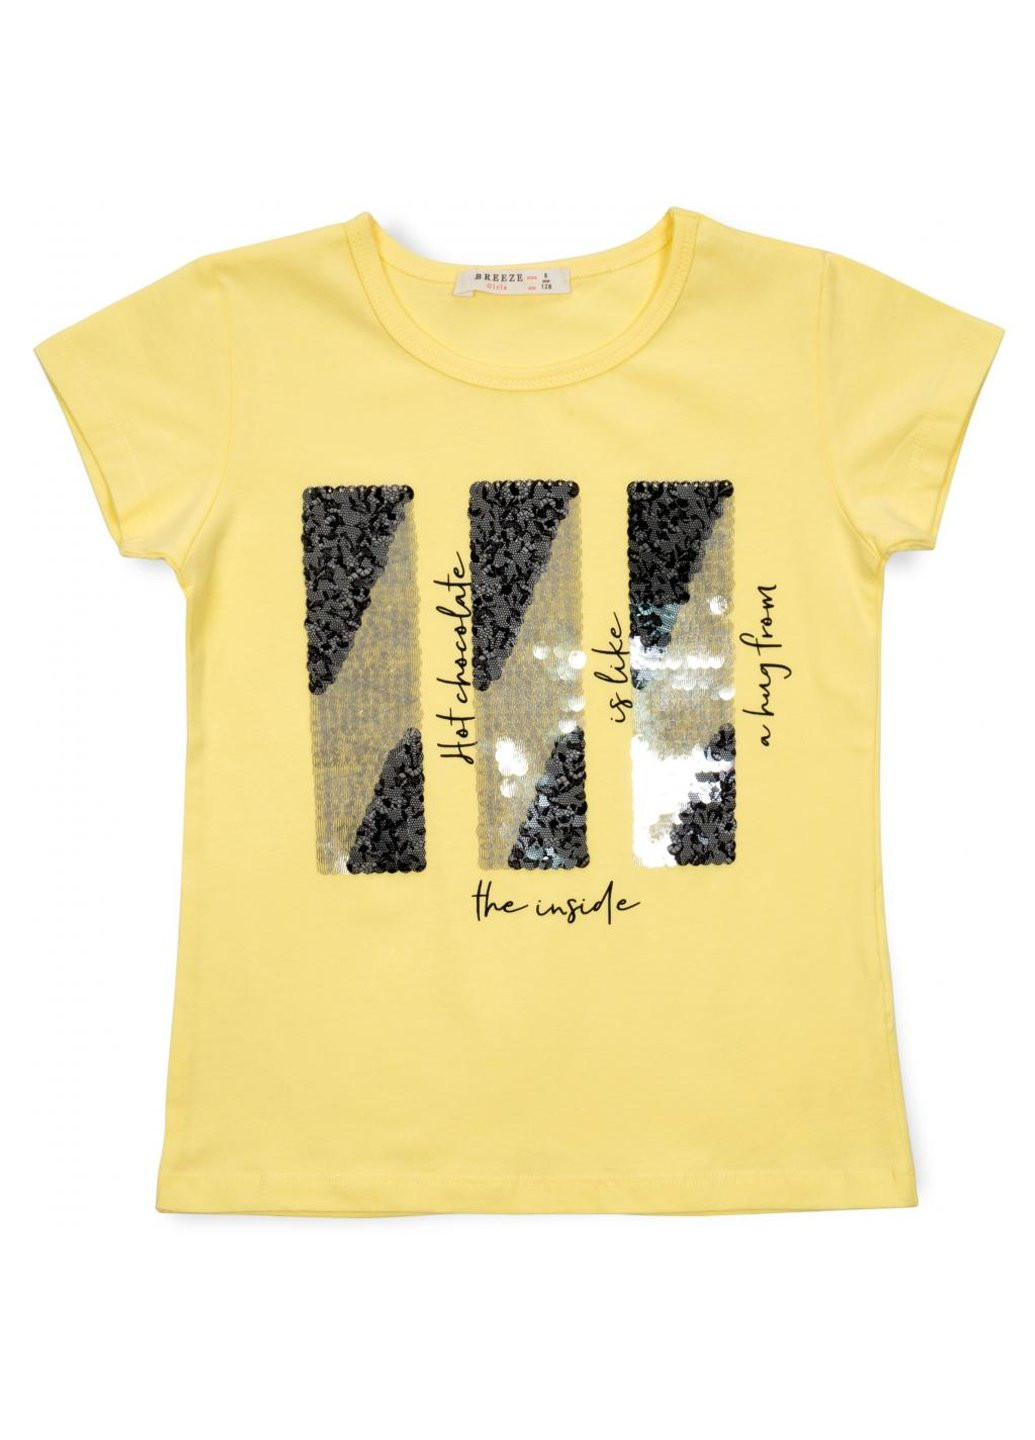 Комбінована футболка дитяча з паєтками (14299-152g-yellow) Breeze